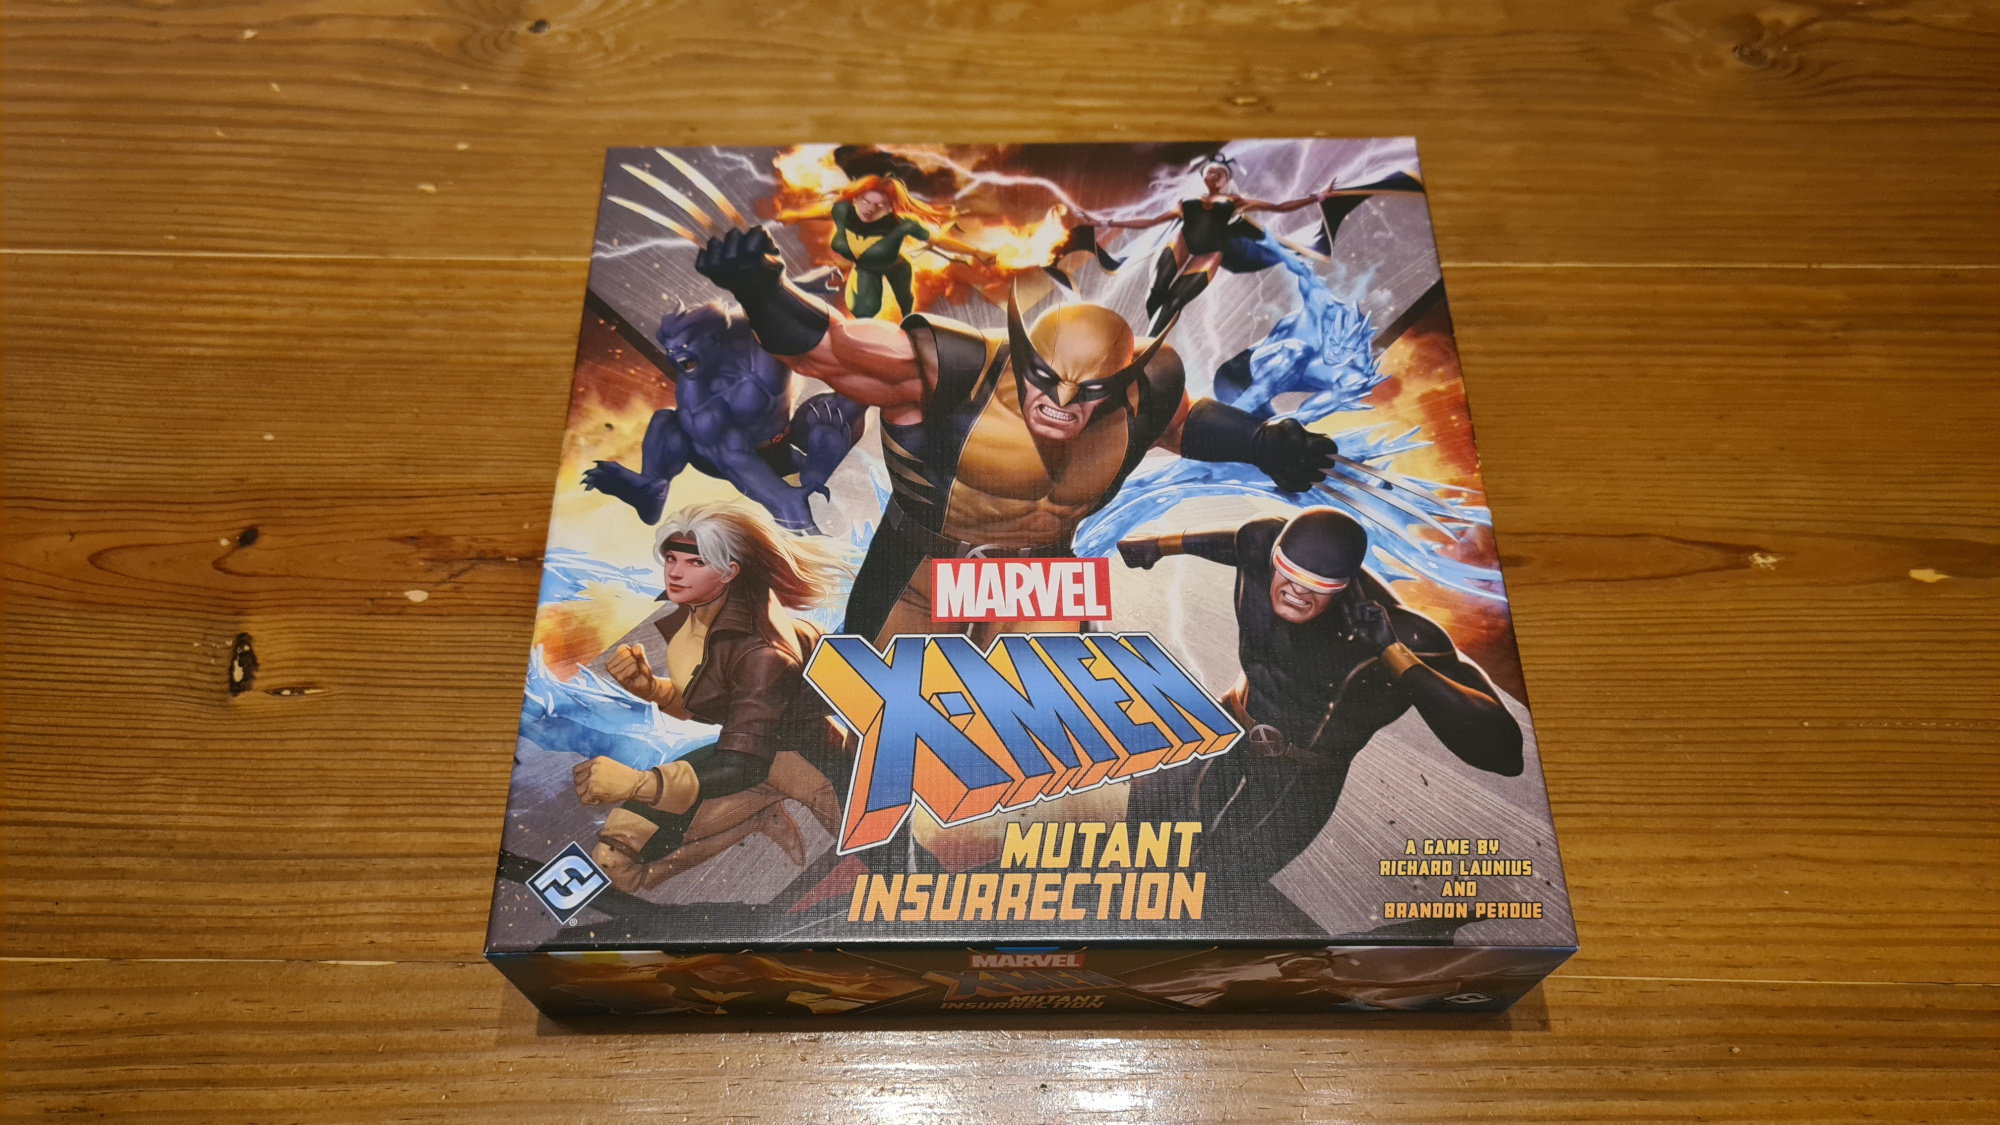 X-Men Mutant Insurrection Review